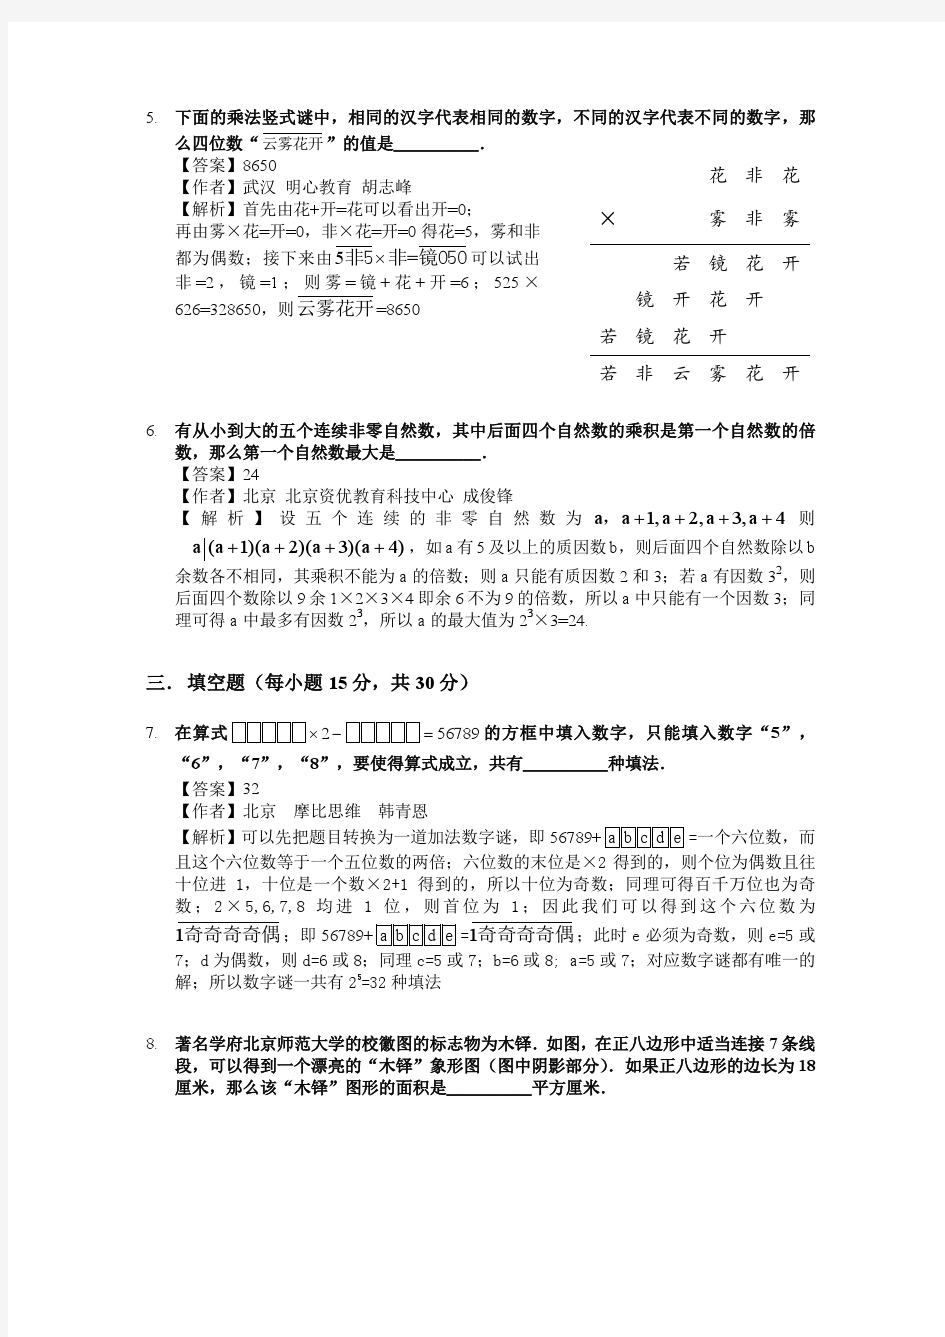 2017年“数学花园探秘”网络评选活动5年级试题详解.pdf